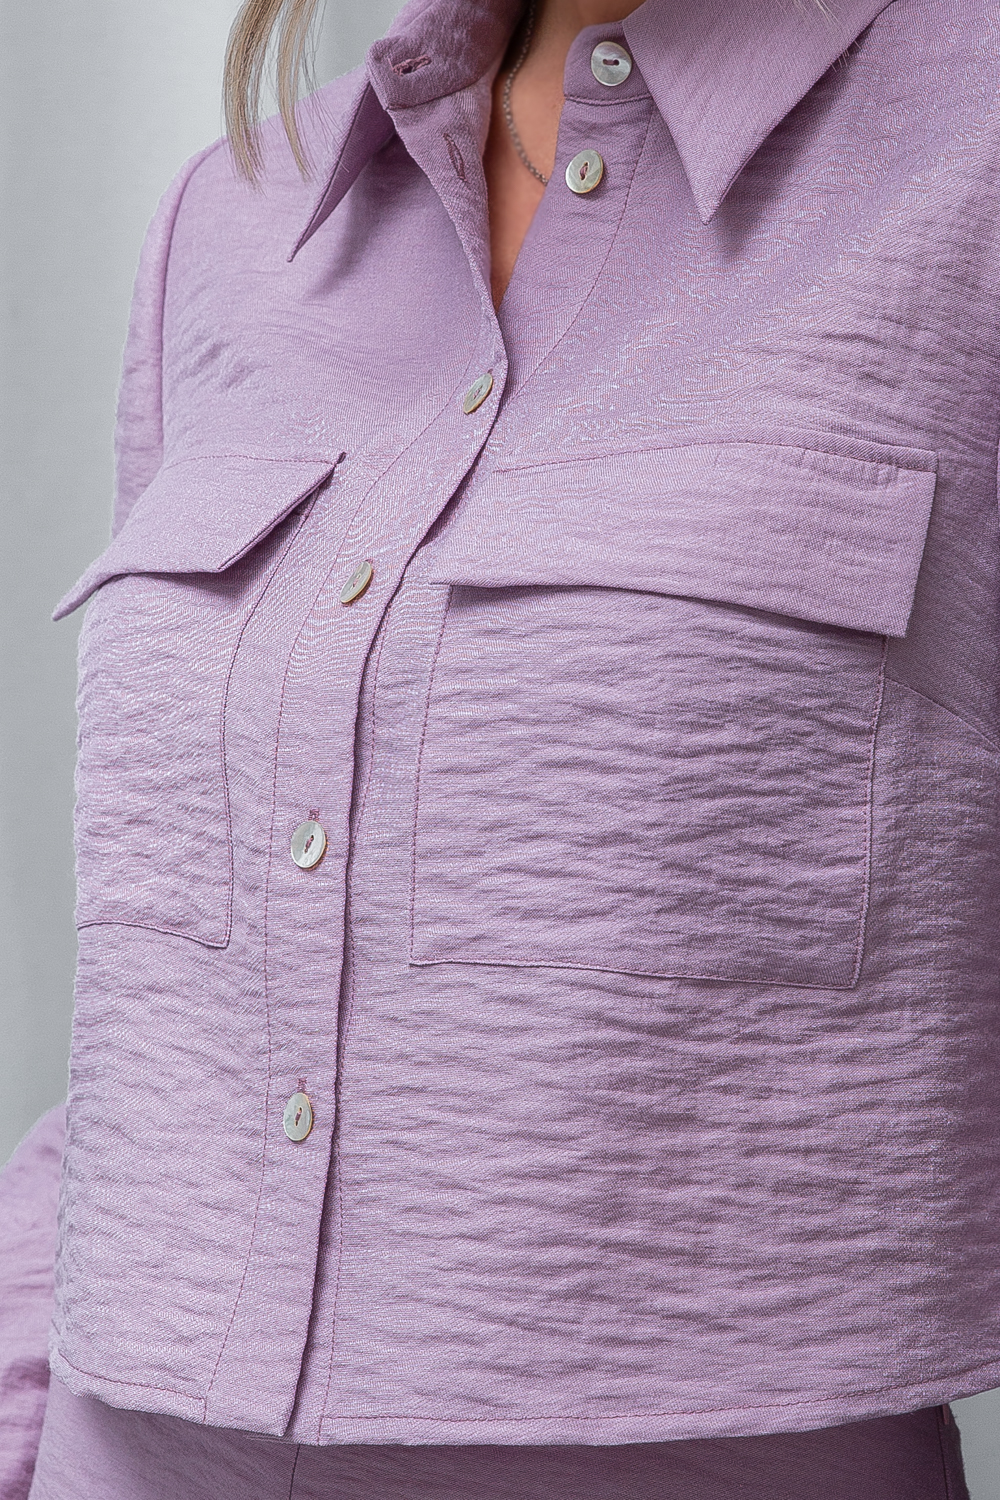 Касиано, экстравагантный комплект цвета лесной розы рубашка "кроп" + юбка четырехклинка длины миди от Ритини